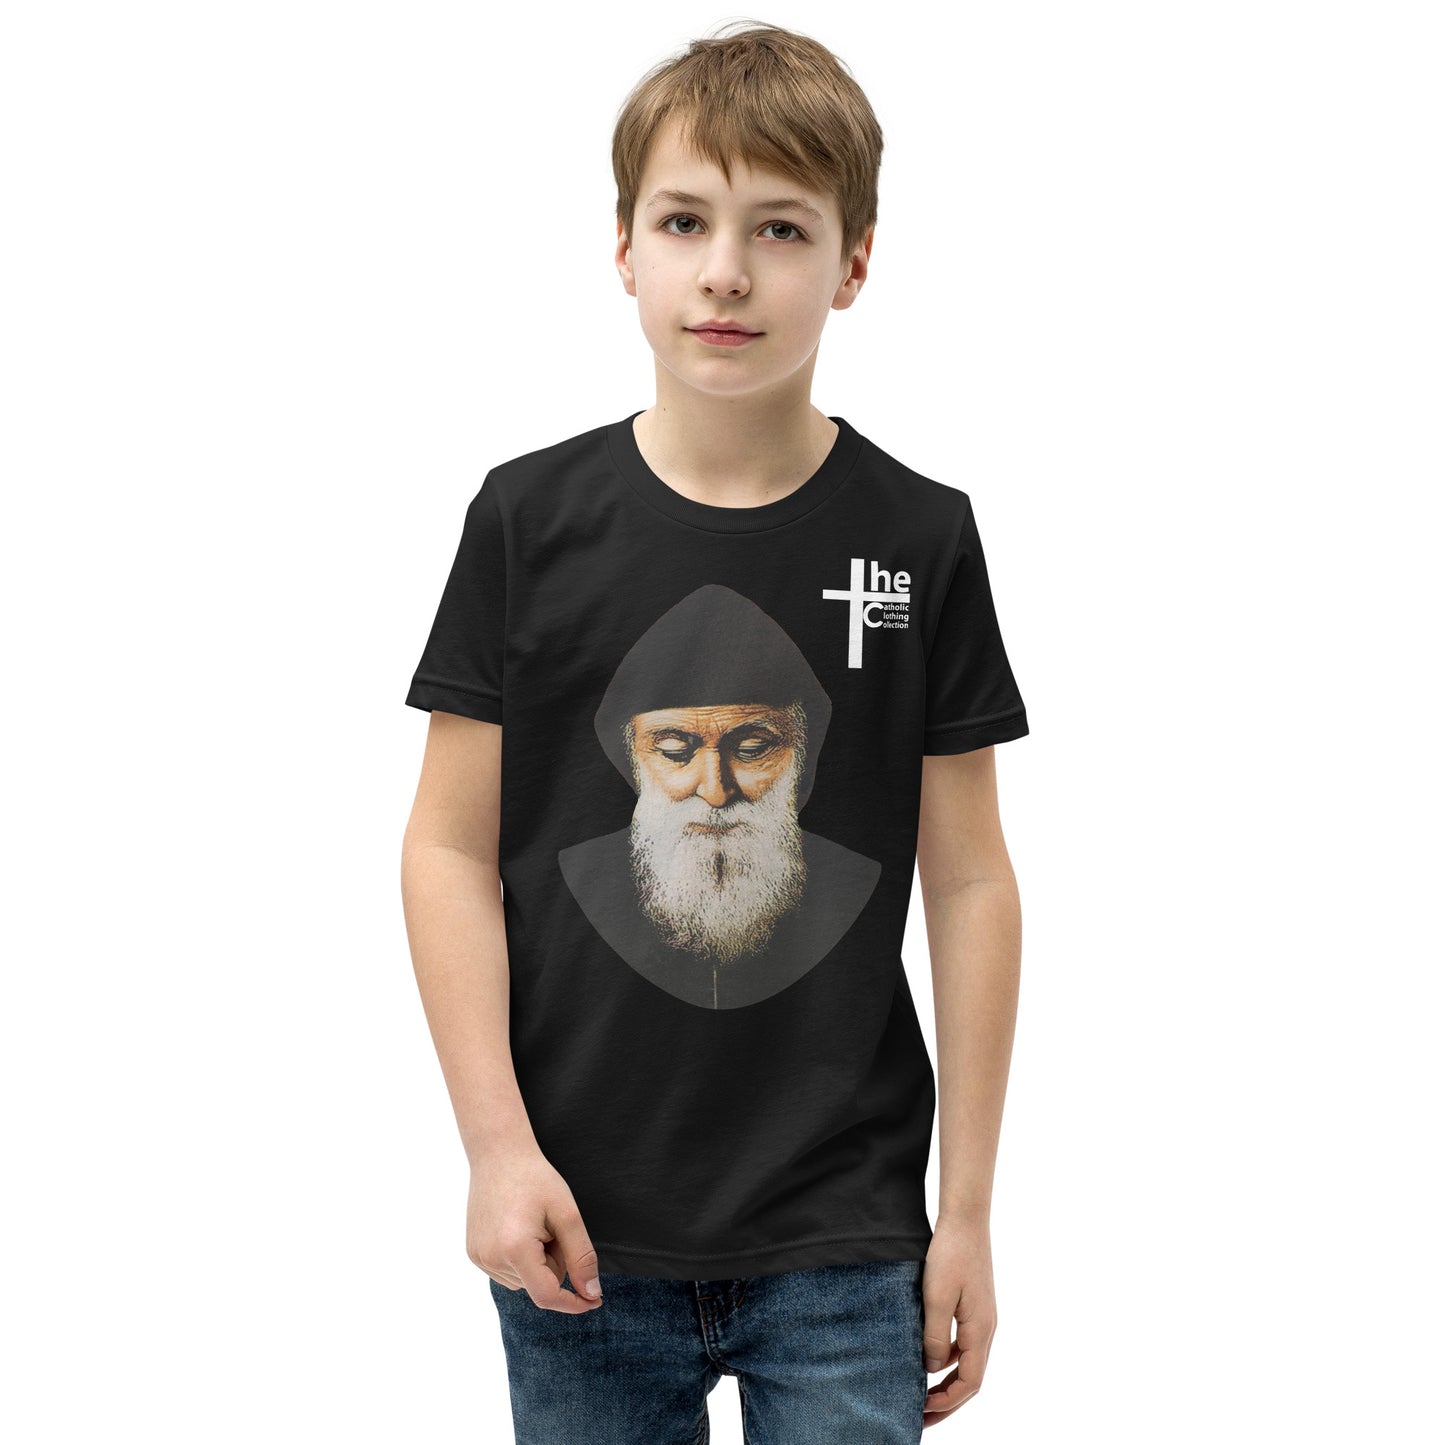 St Charbel Children's t-Shirt